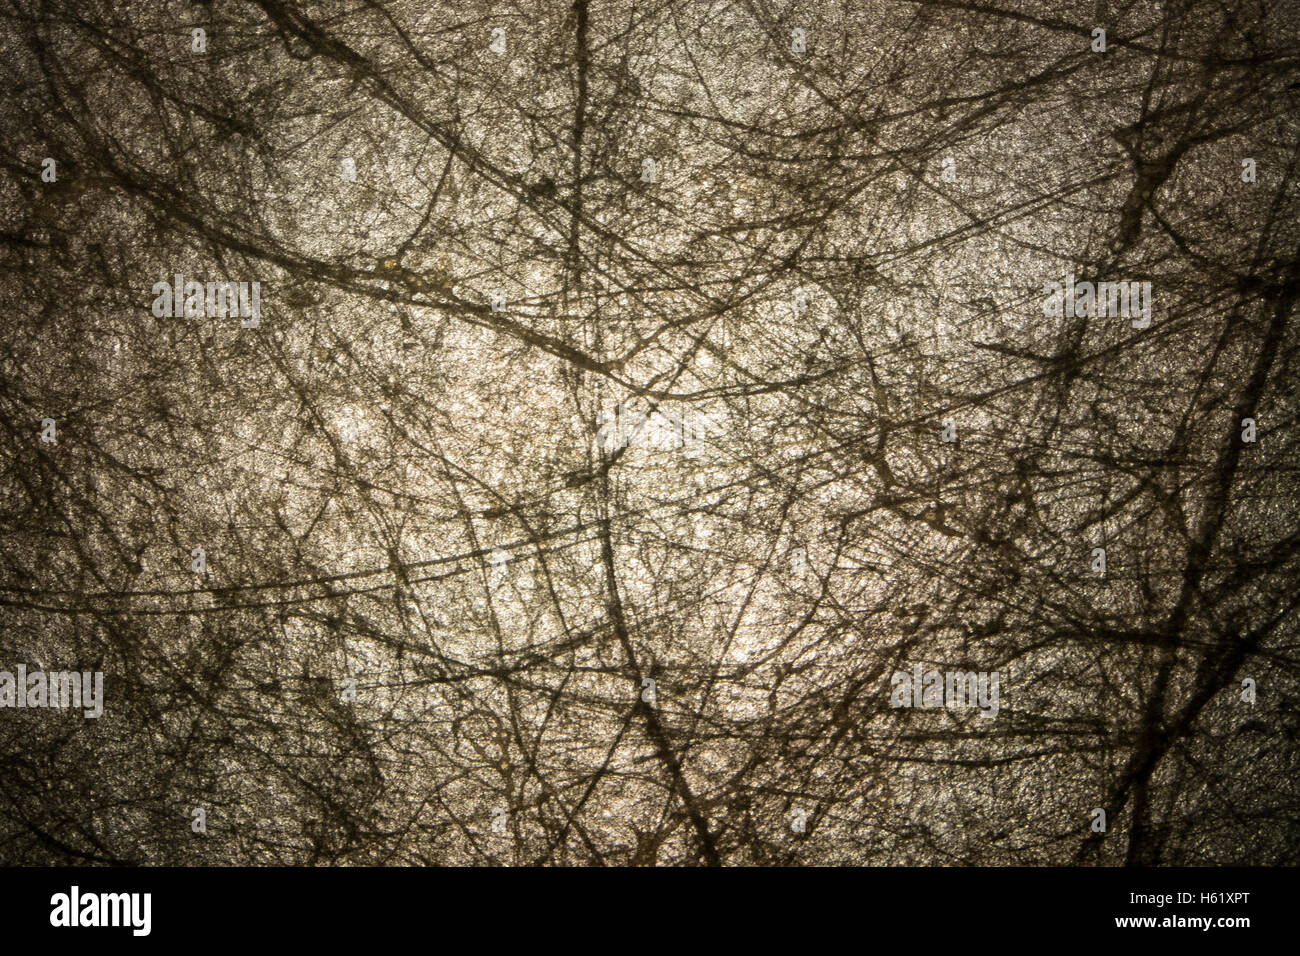 Perfetto abstract background strutturato con texture naturali closeup vignette di un particolare estratto dalla carta fatta a mano con legno t Foto Stock